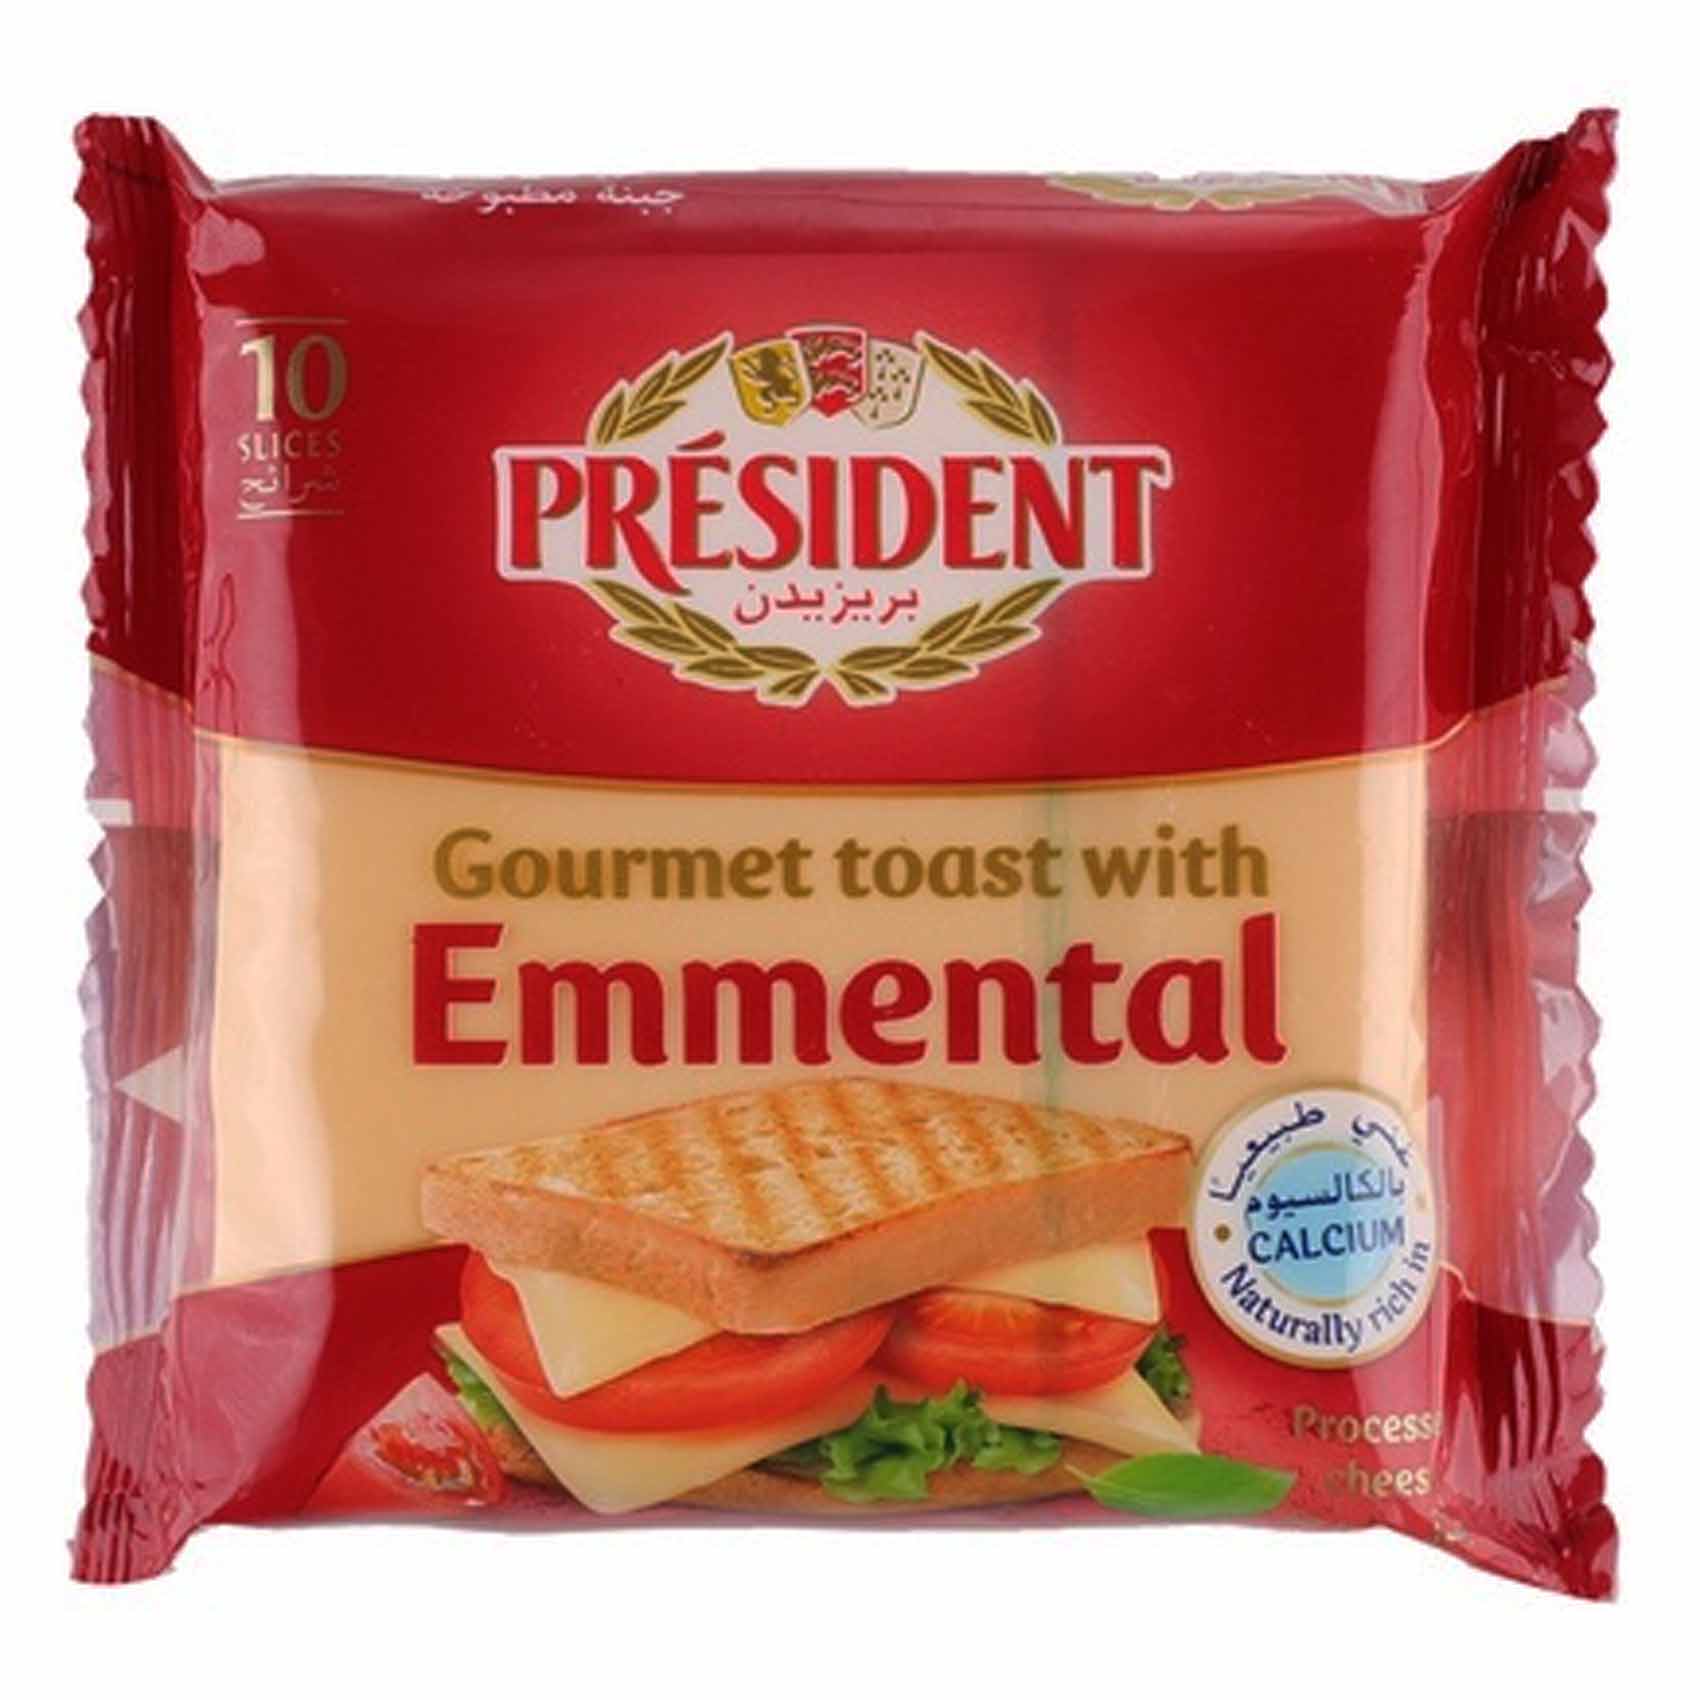 President Slices Toast Emmental